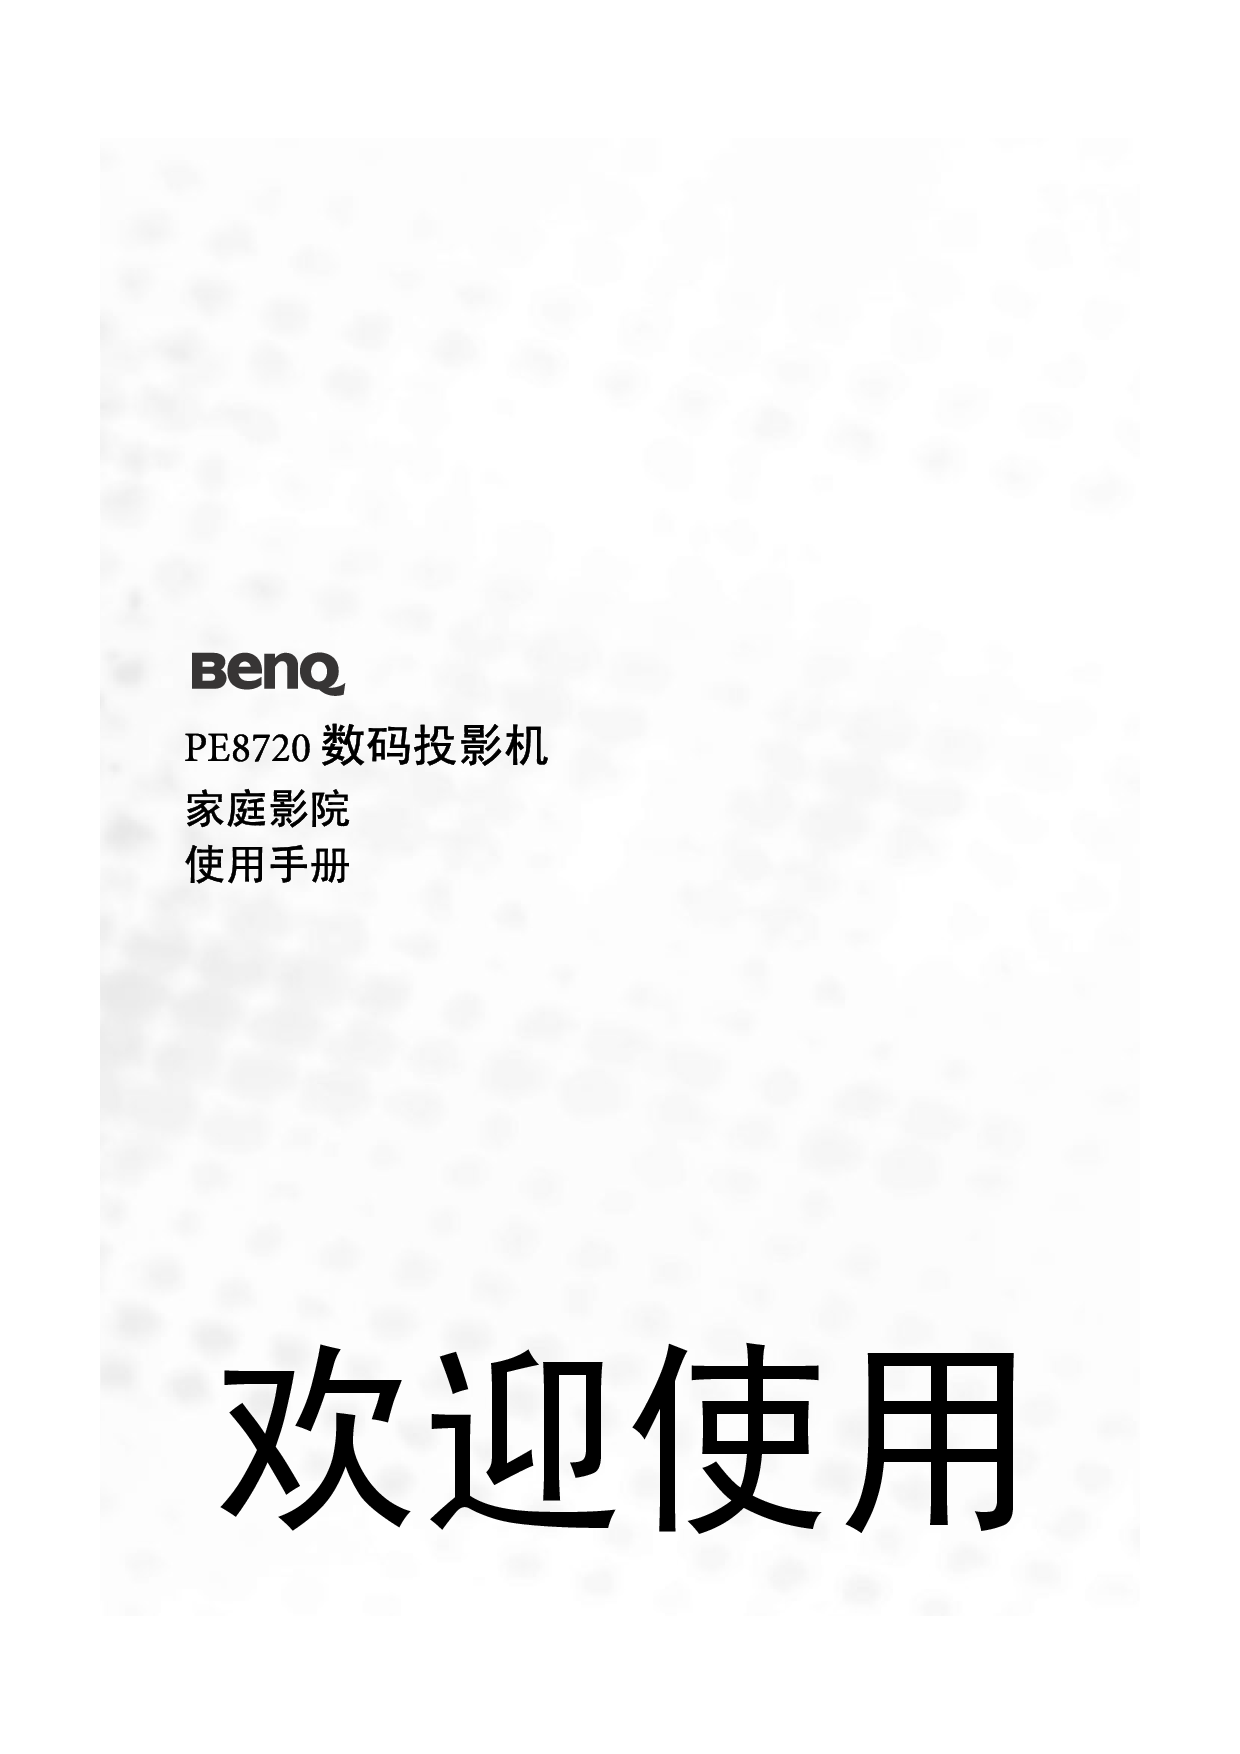 明基 Benq PE8720 使用手册 封面